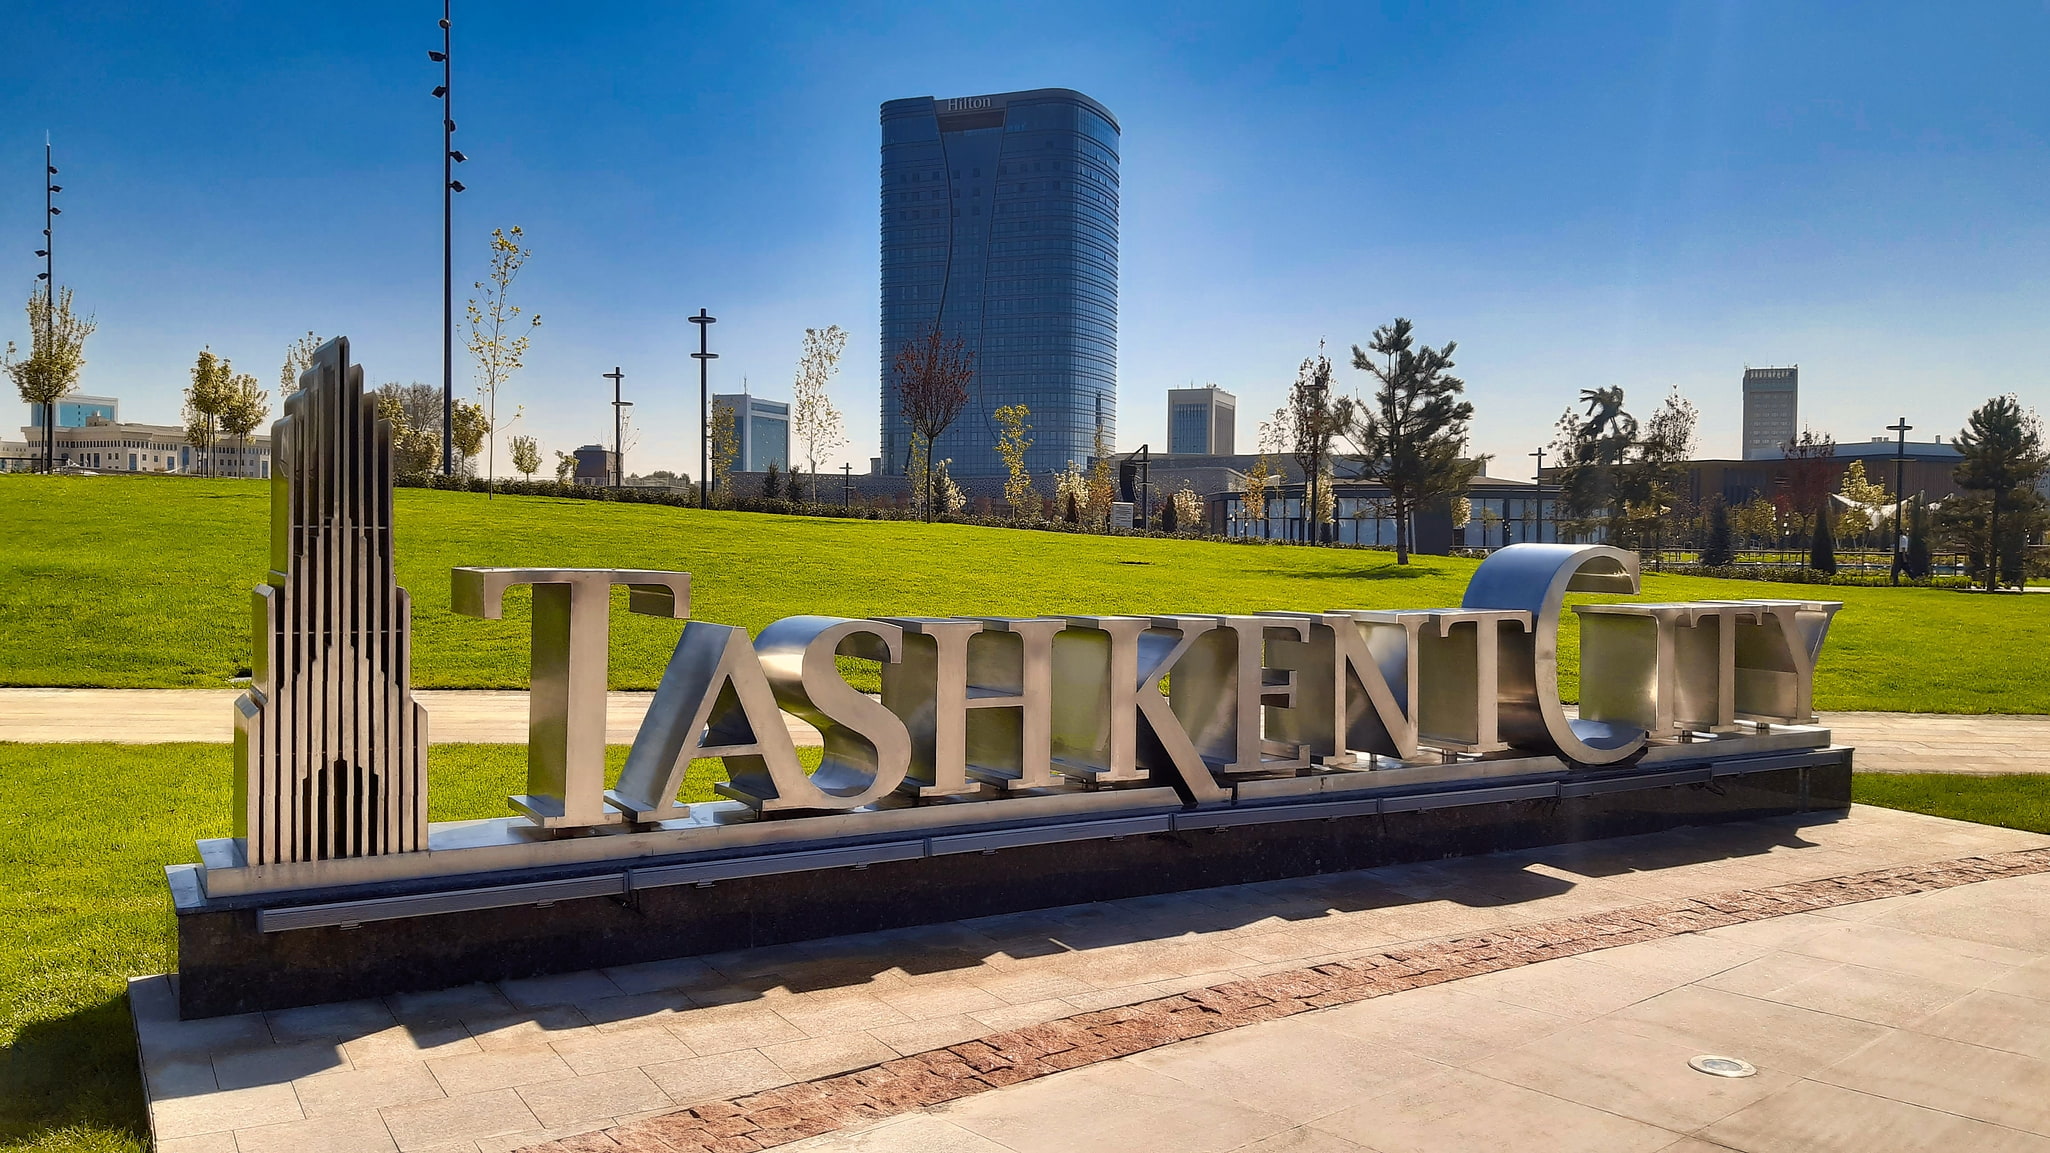 Tachkent, Ouzbékistan